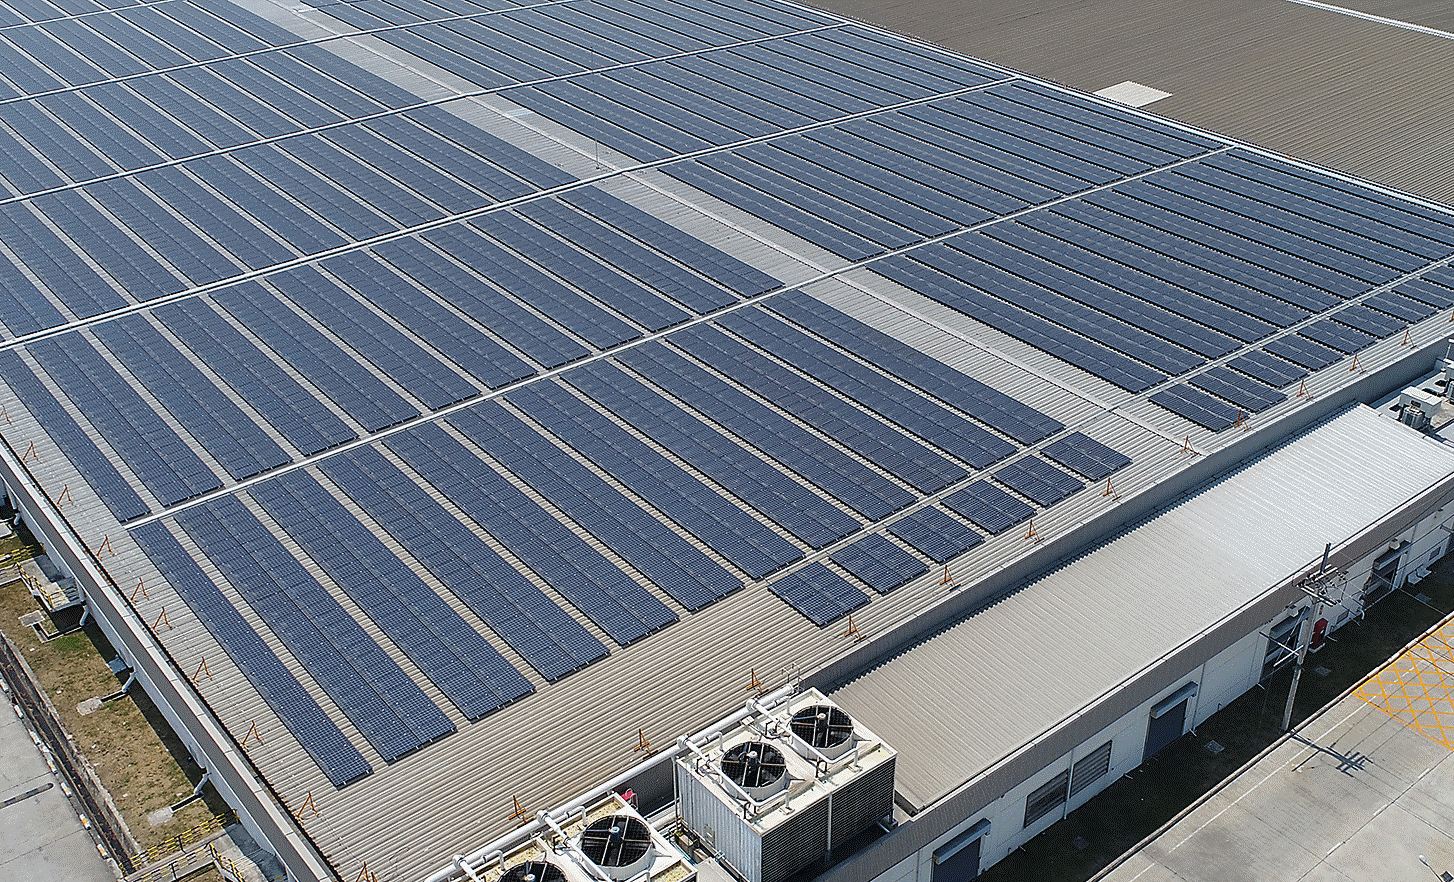 Fotografía del techo de la fábrica de Sony EMCS (Malasia) cubierto por paneles solares